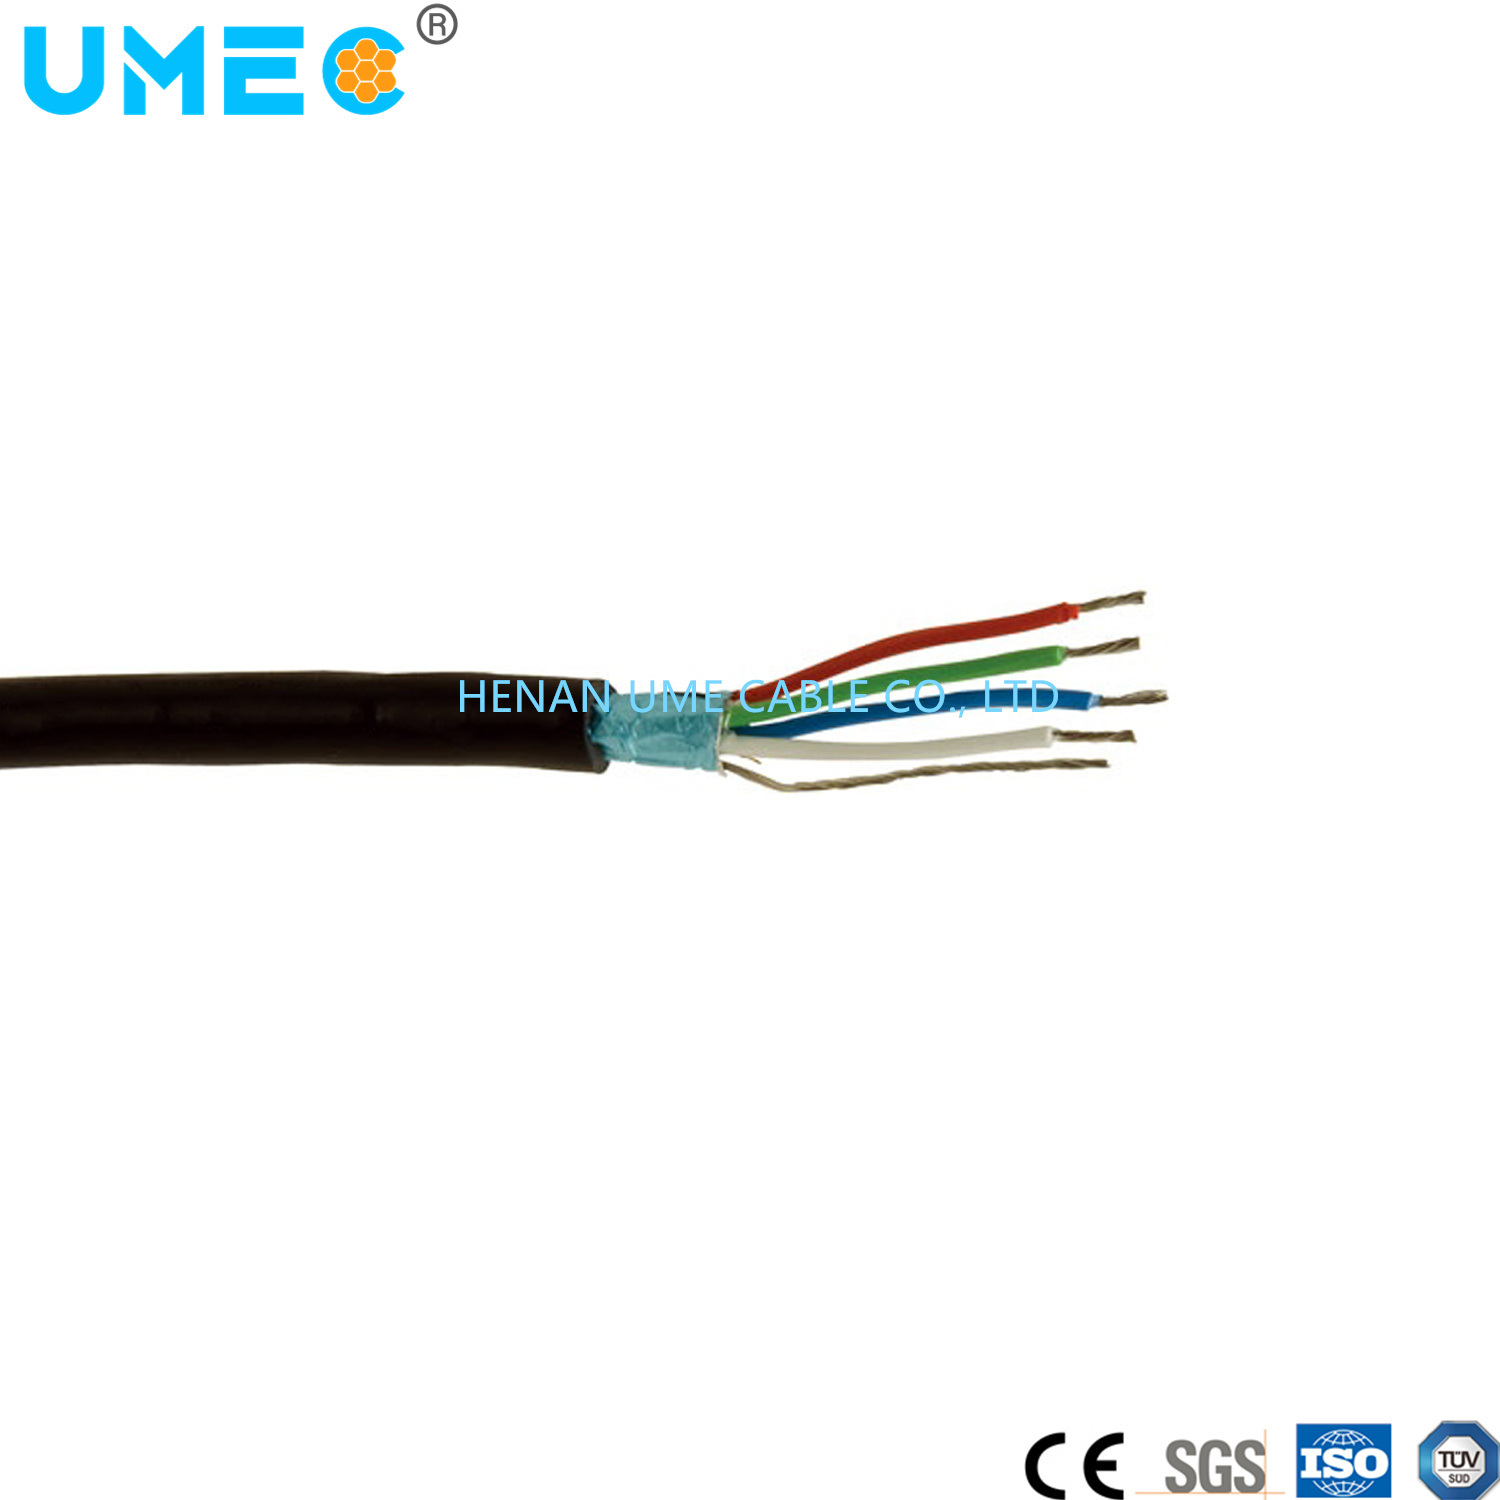 
                Verzinntes Kupfer-Kabel mit 300V-Niederspannung, Brain Ummantelungskabel DMX512n Kabel
            